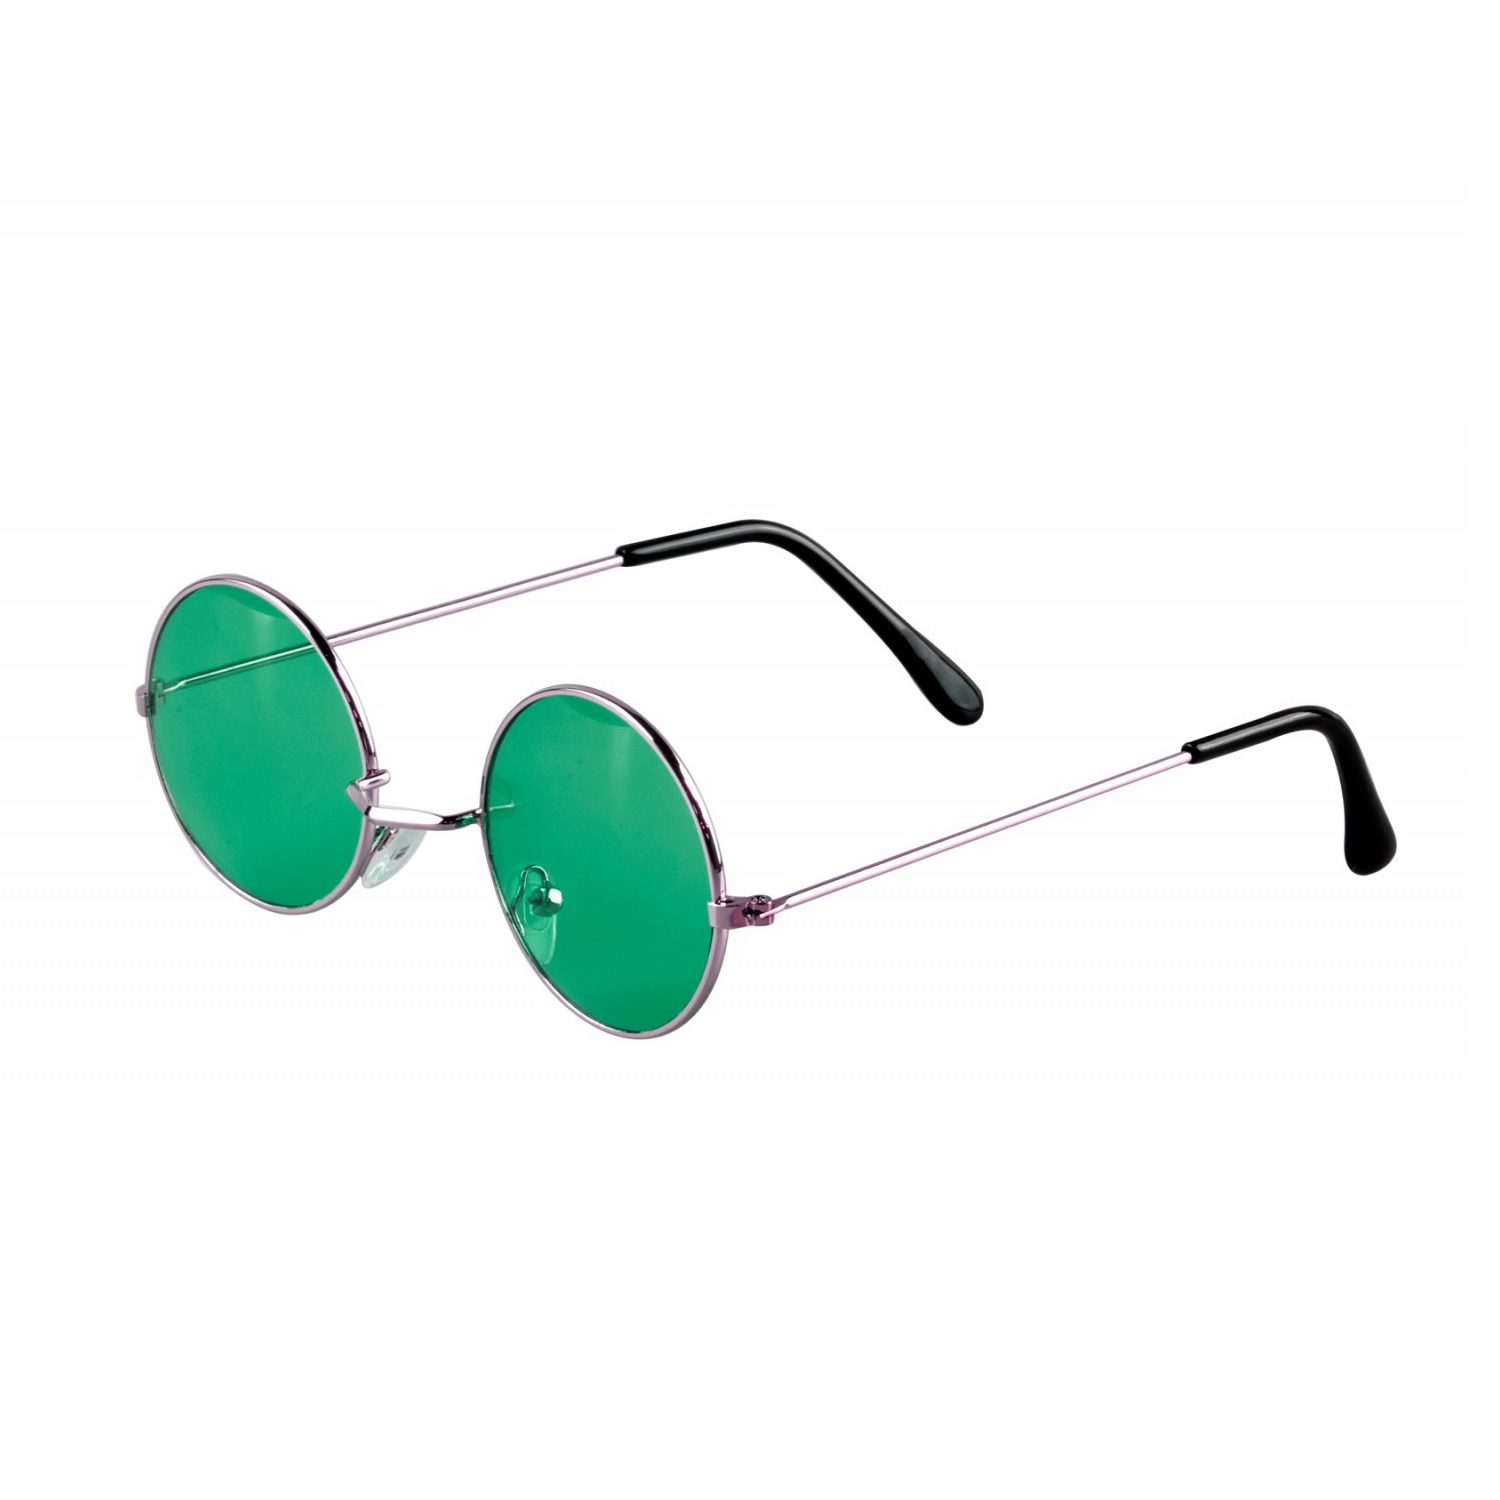 Brille Hippie, runde, grüne Gläser aus Metall Bild 2